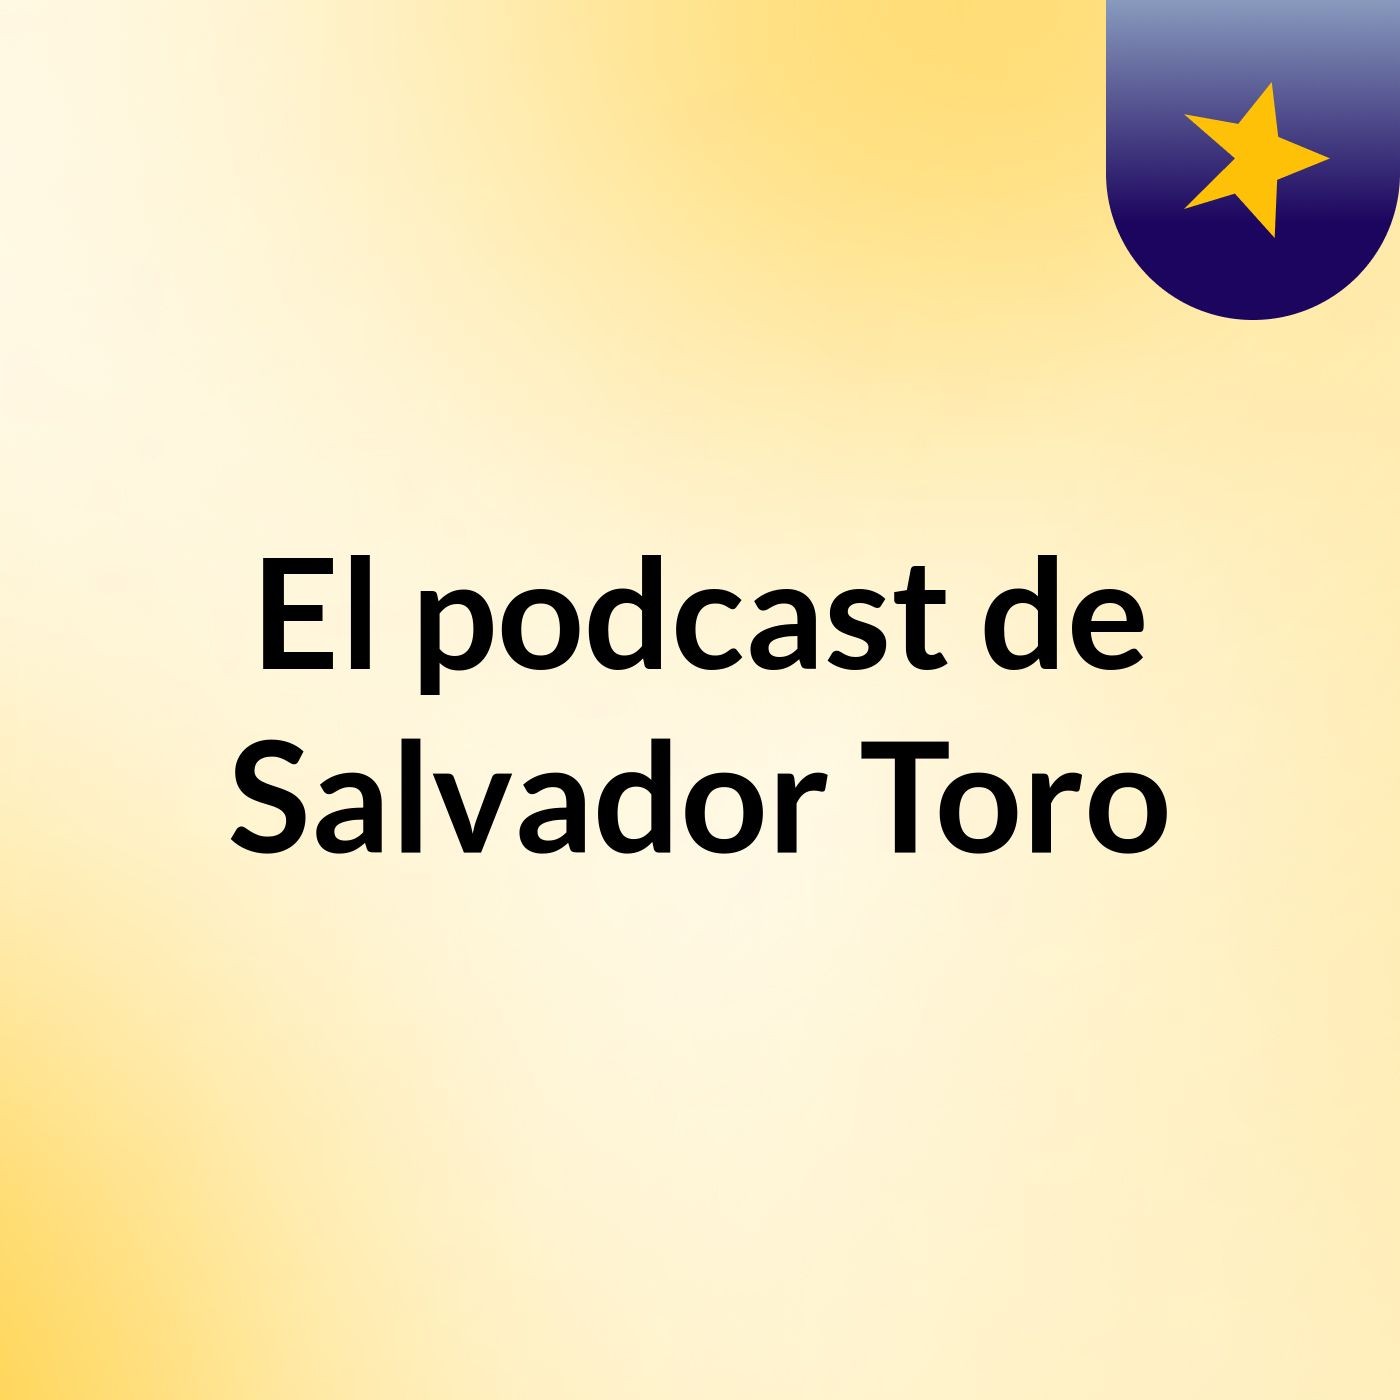 El podcast de Salvador Toro